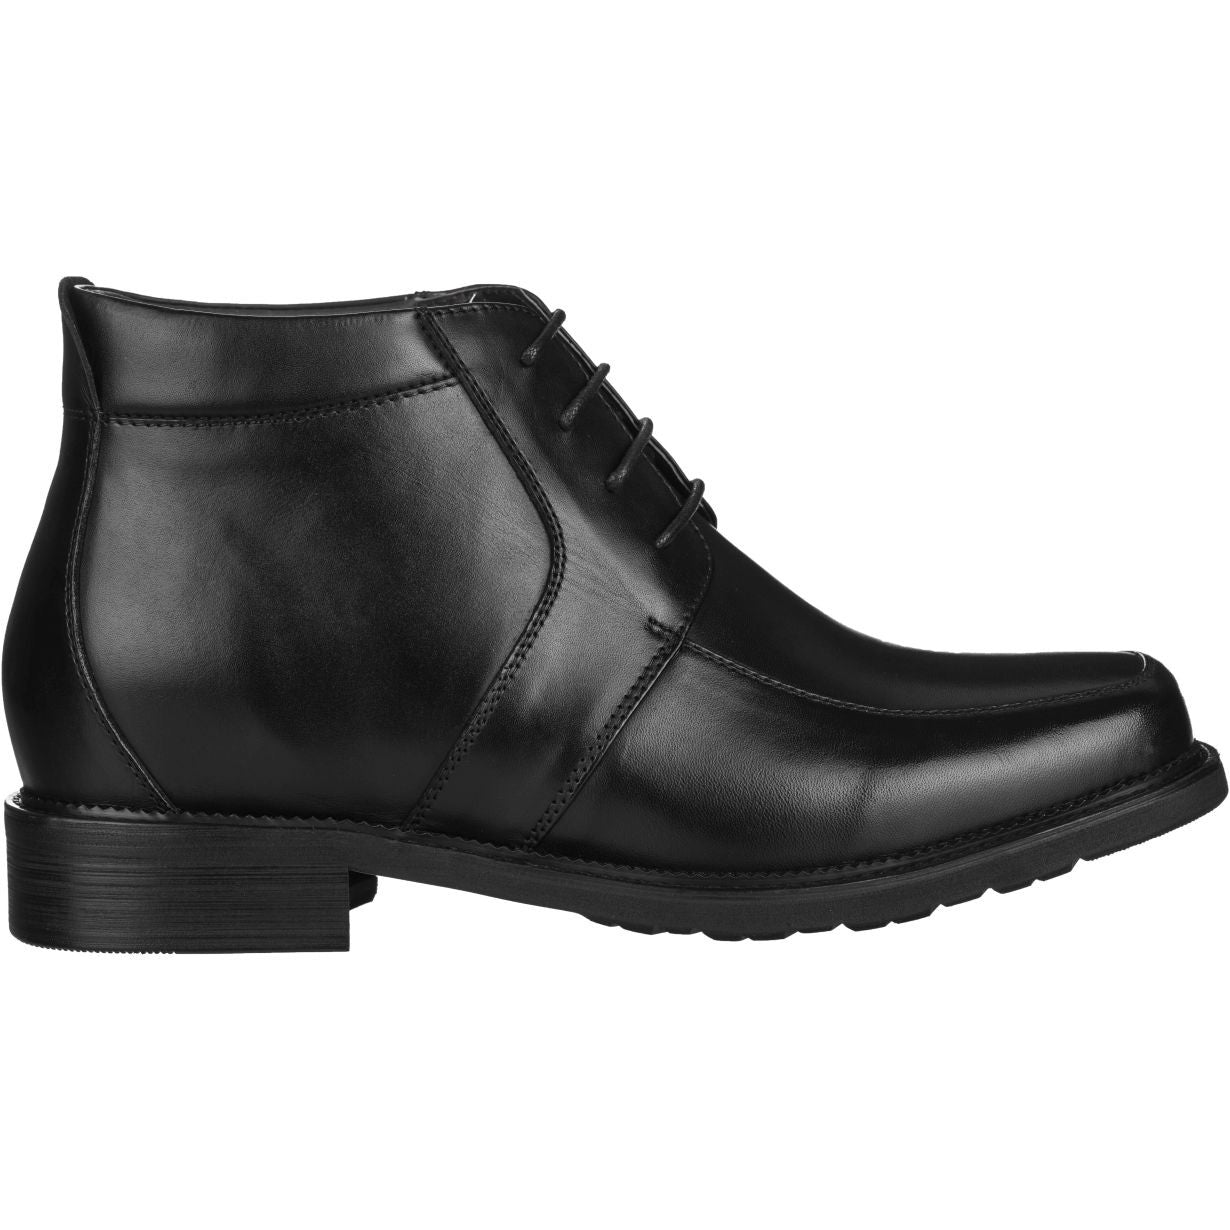 CALTO Leather Dress Elevator Boots - TallMenShoes.com – Tallmenshoes.com